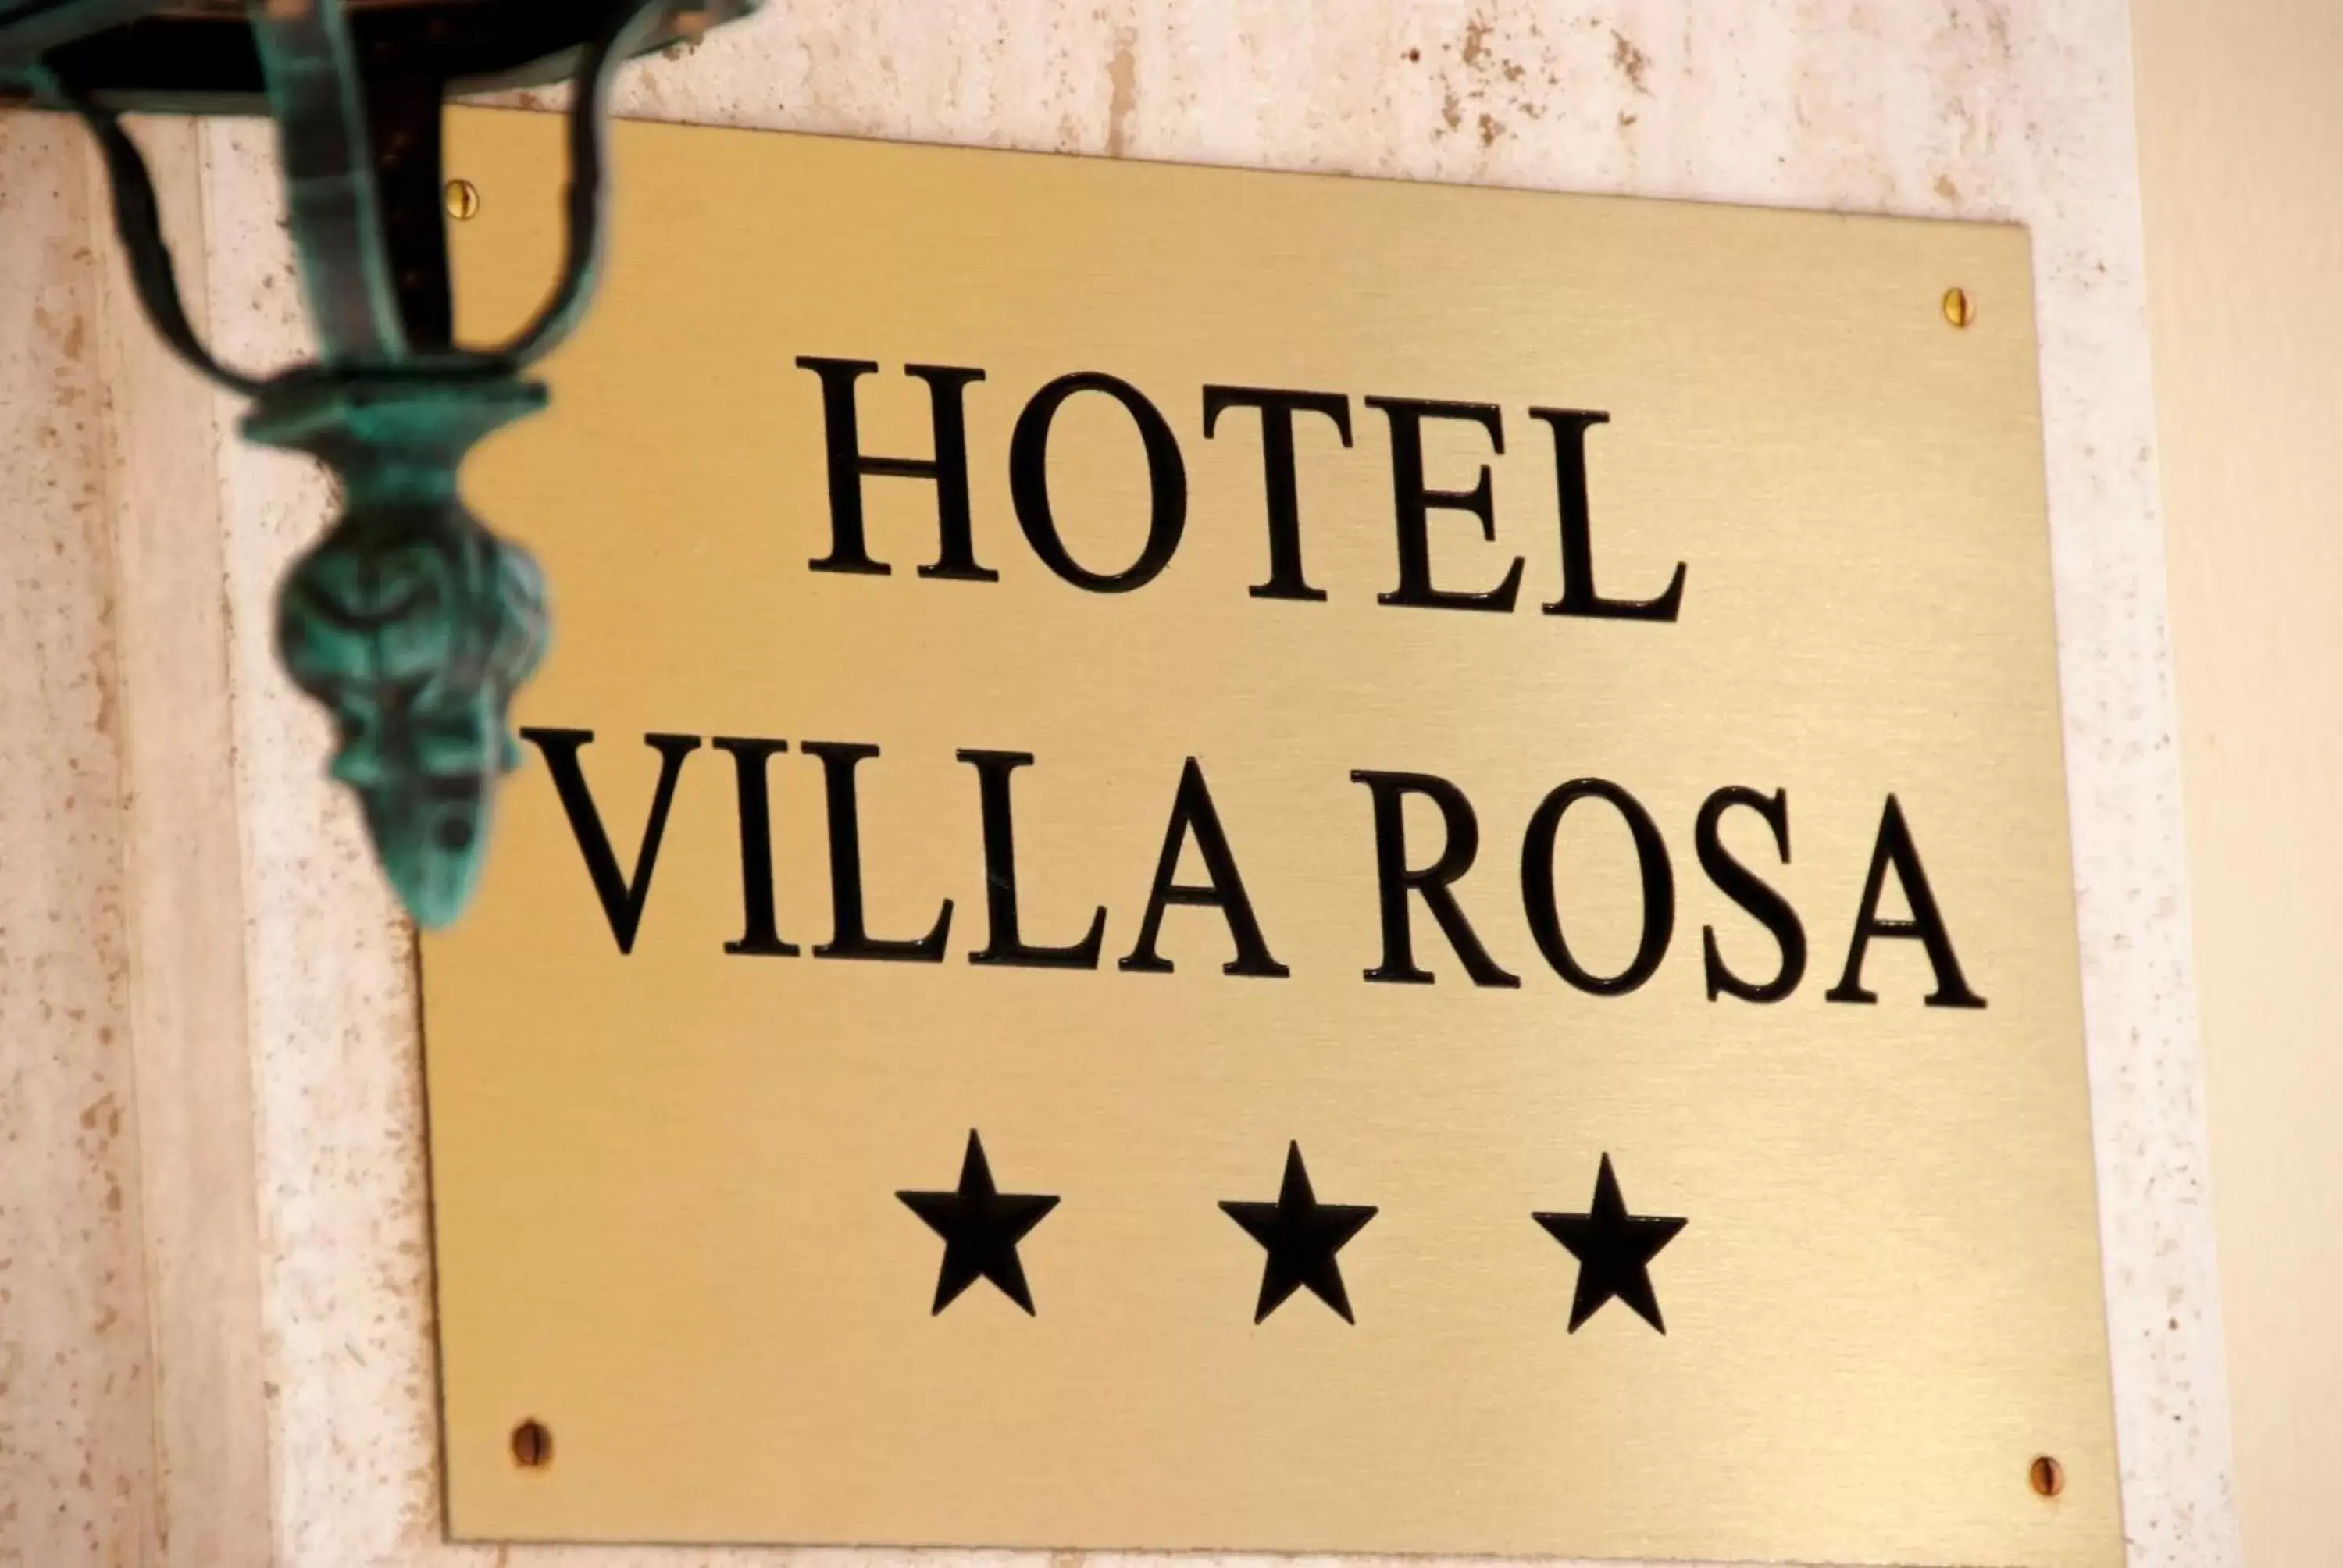 Decorative detail in Hotel Villa Rosa